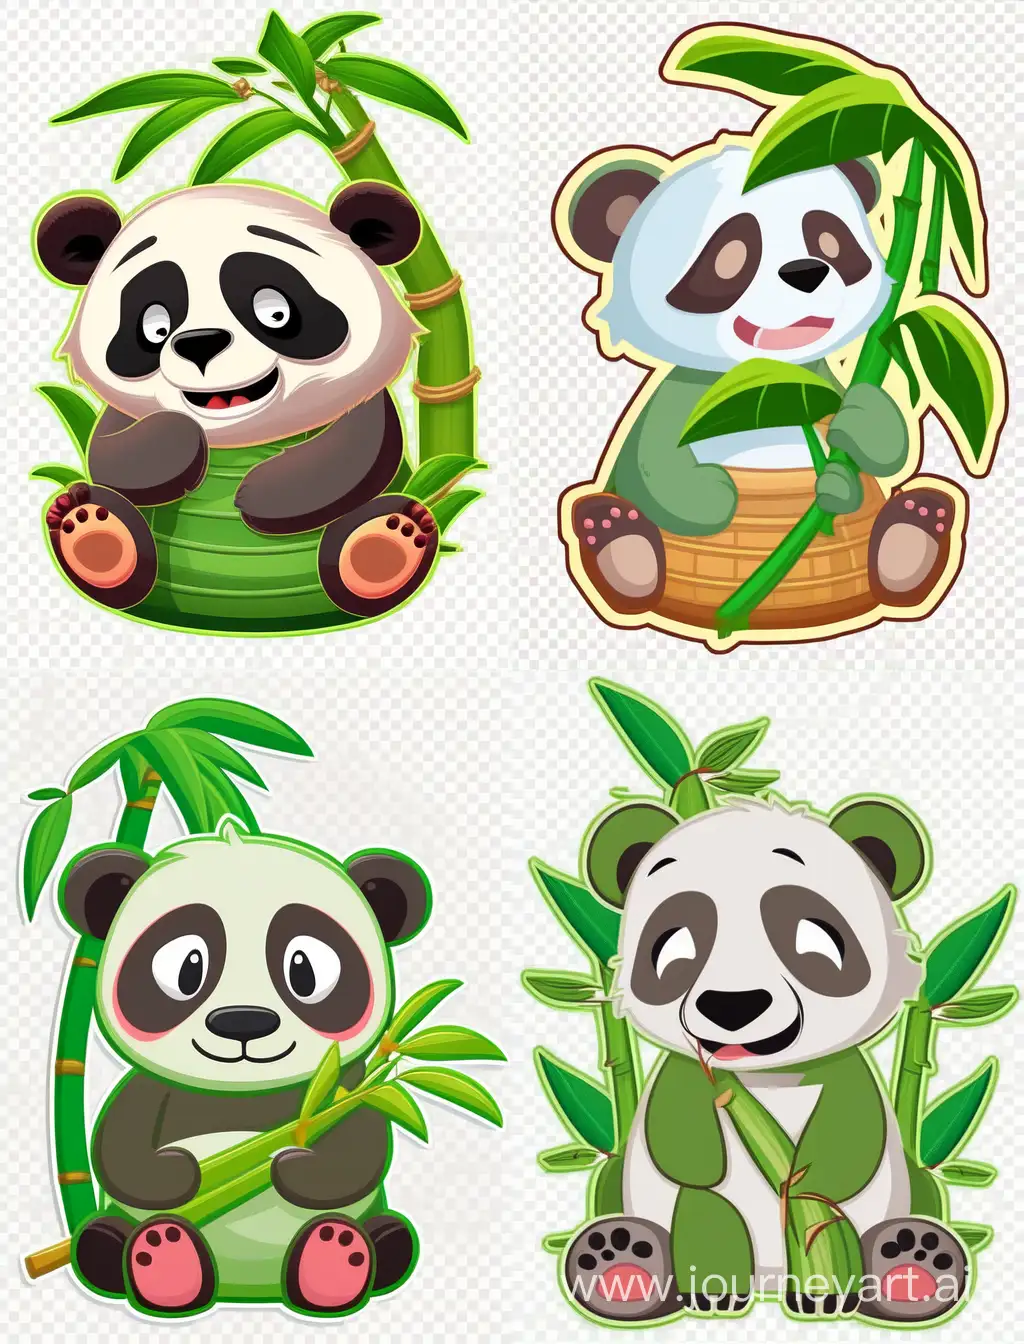 Playful-Panda-Expressive-Emotions-in-Cute-Sticker-Art-Design